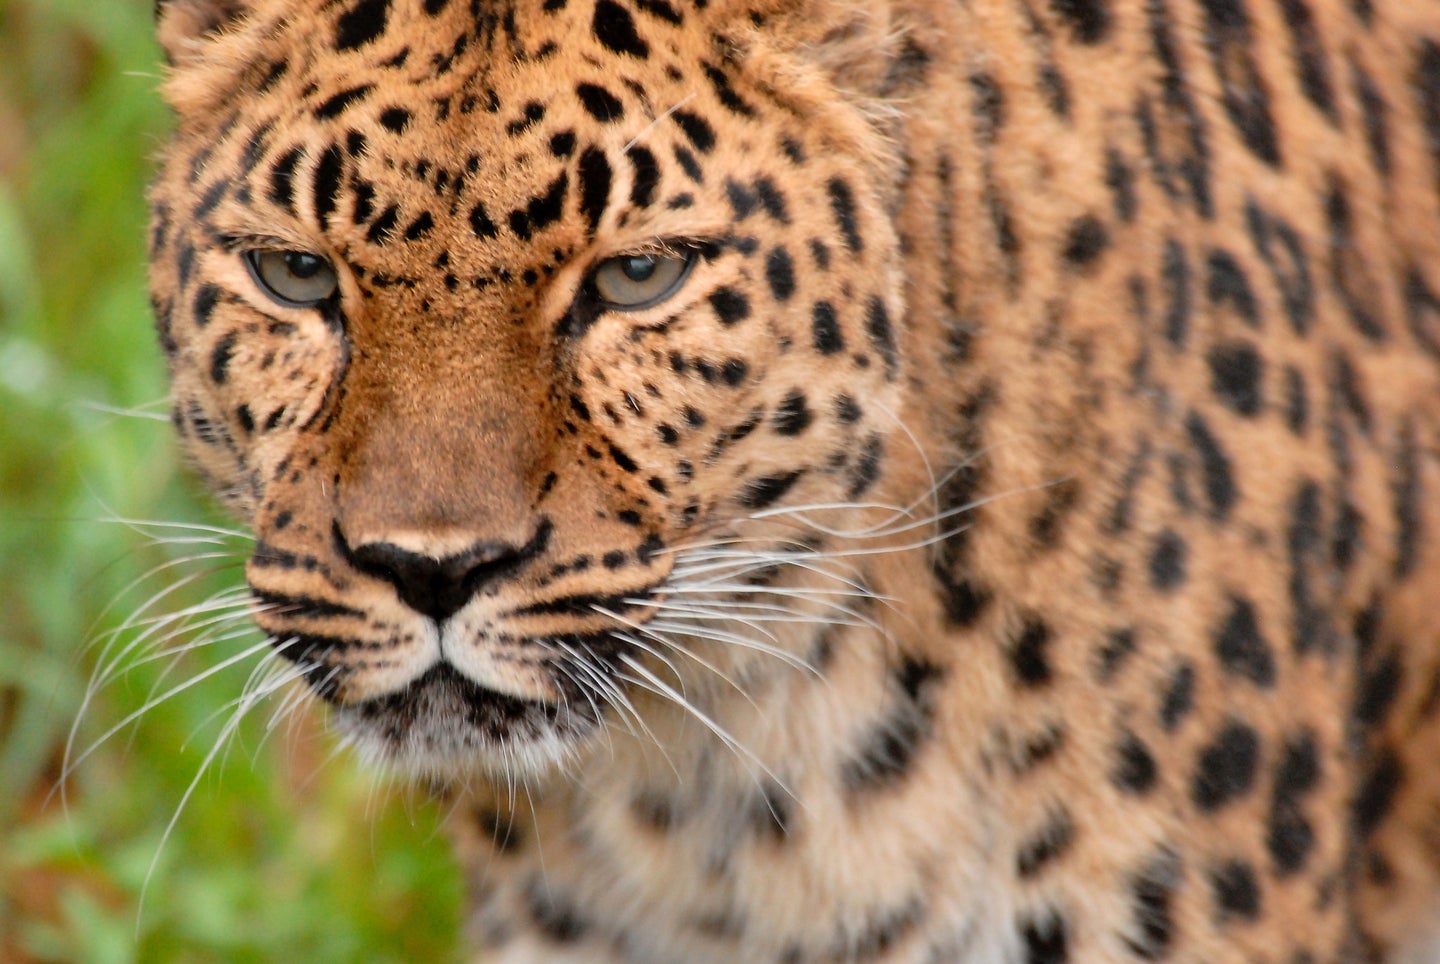 Jaguar closeup in grass